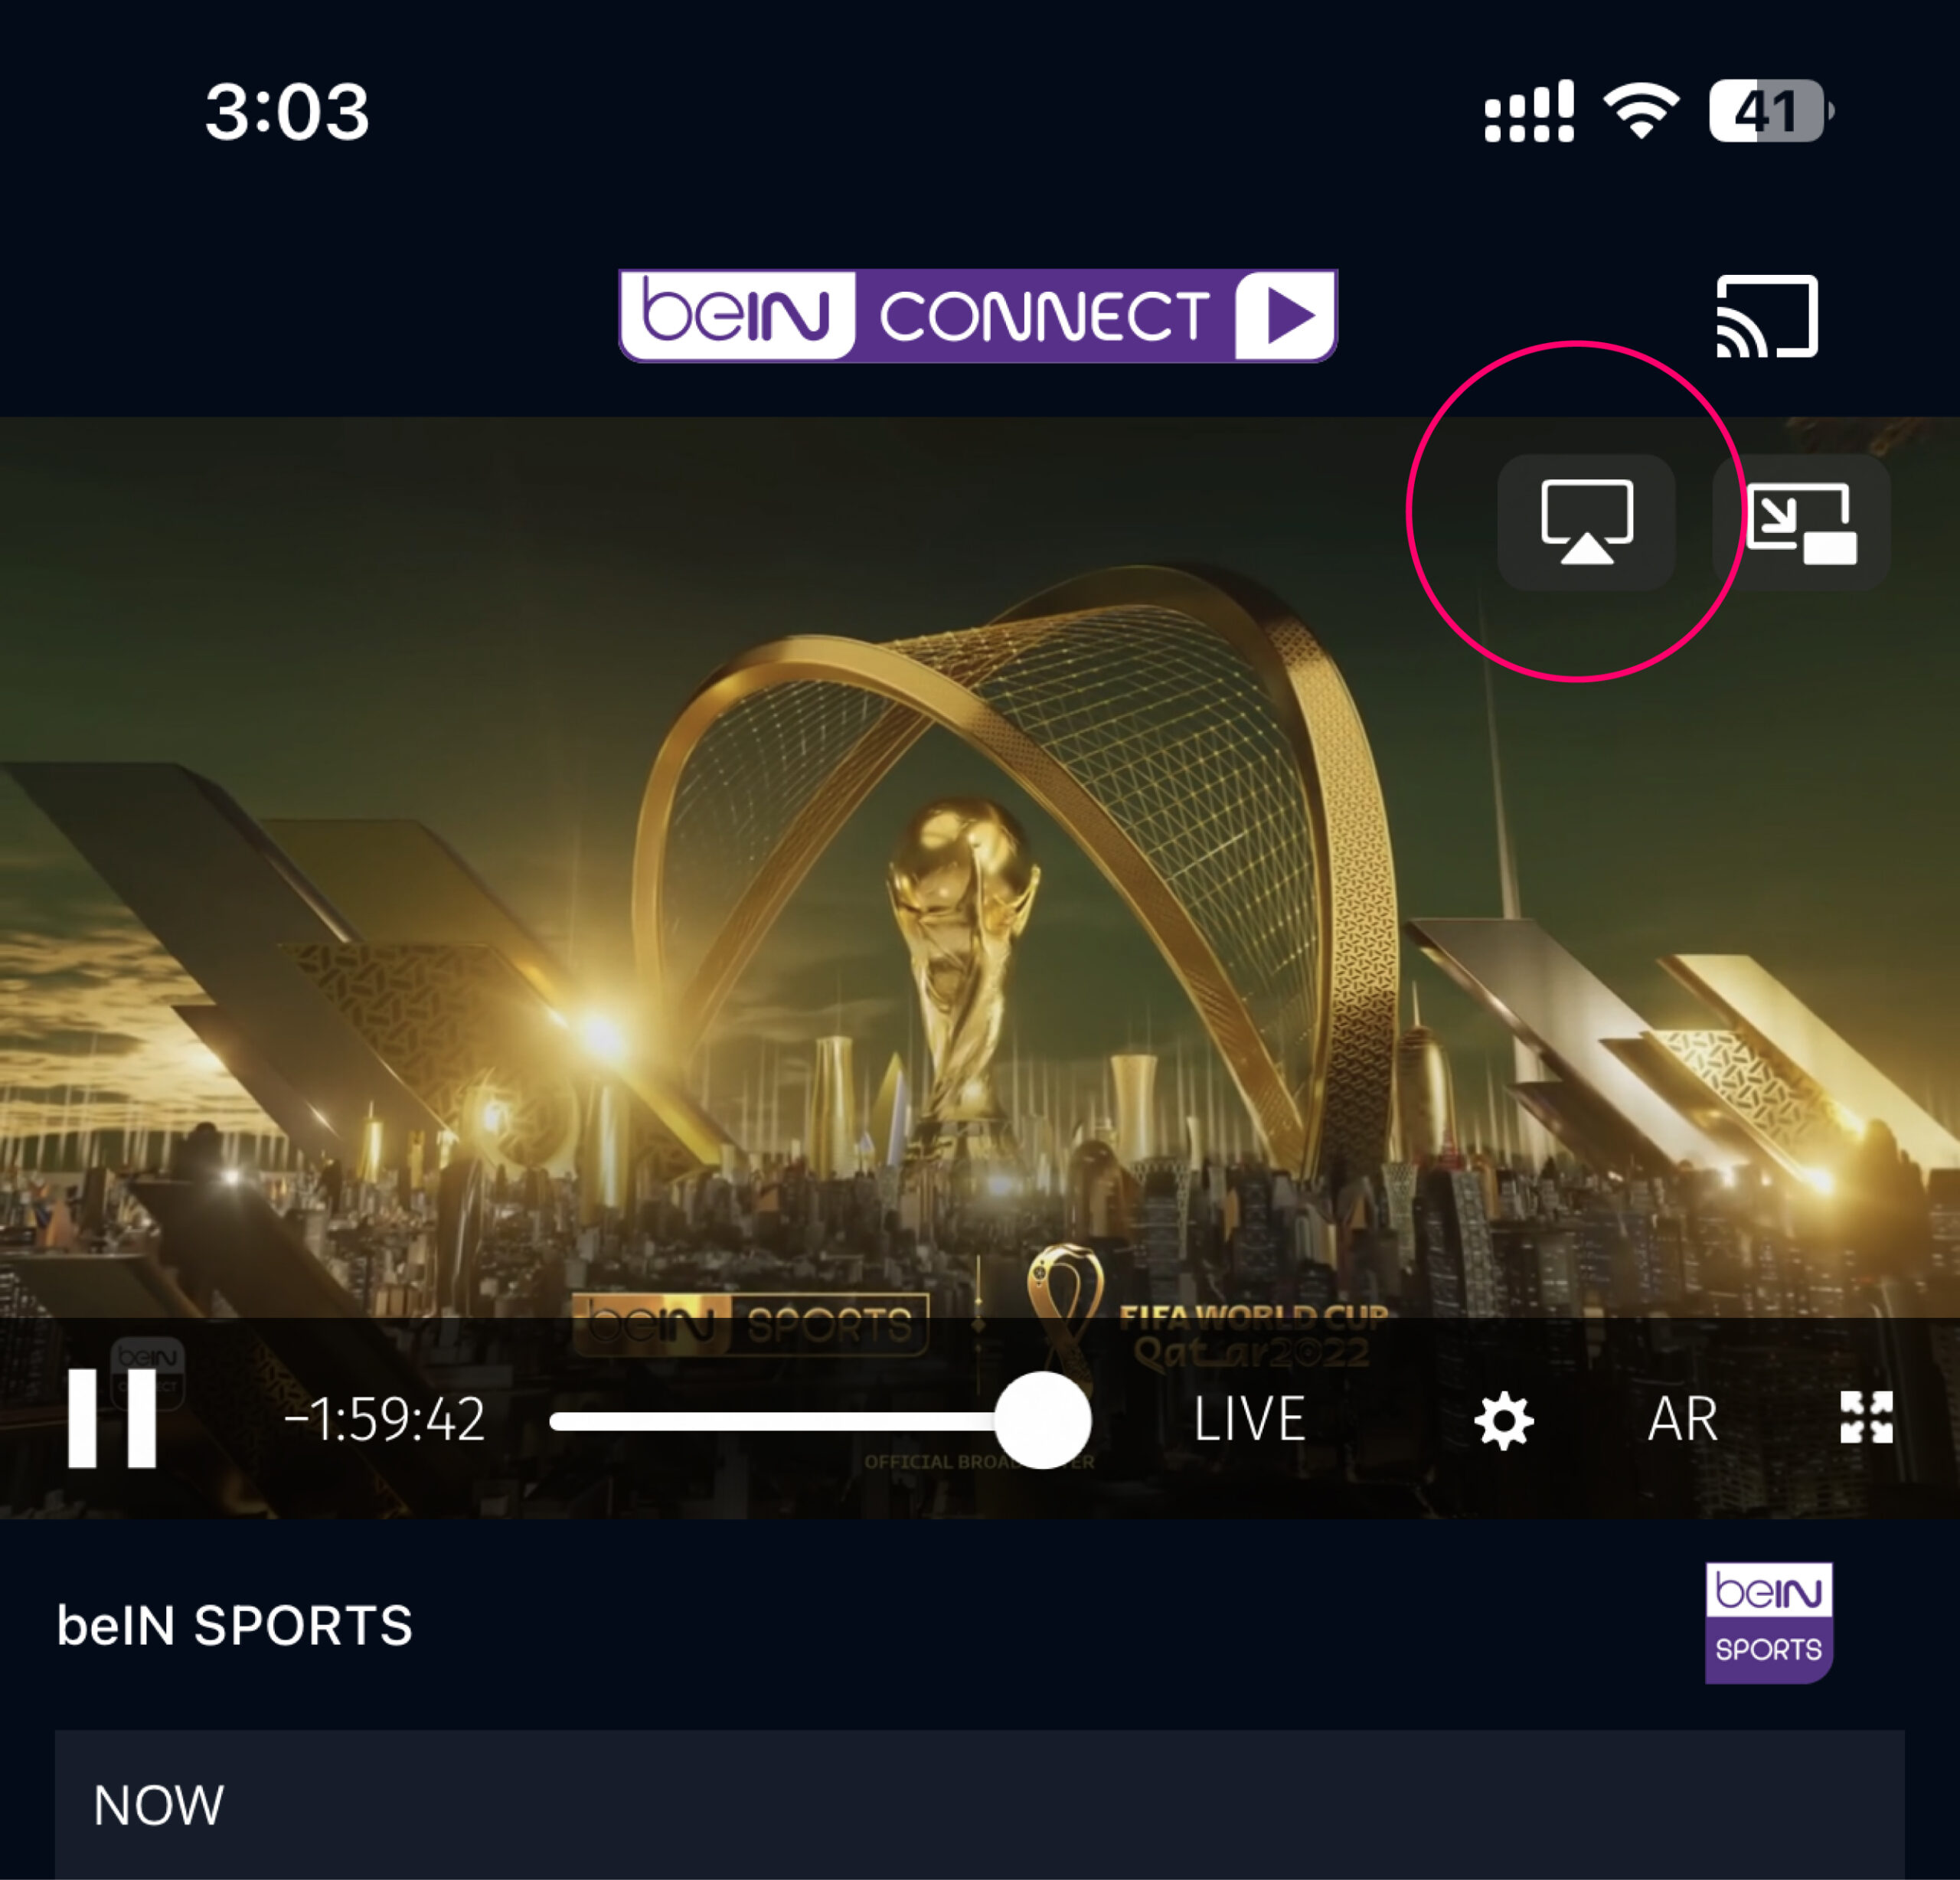 bein sport 1 tv live stream arabic